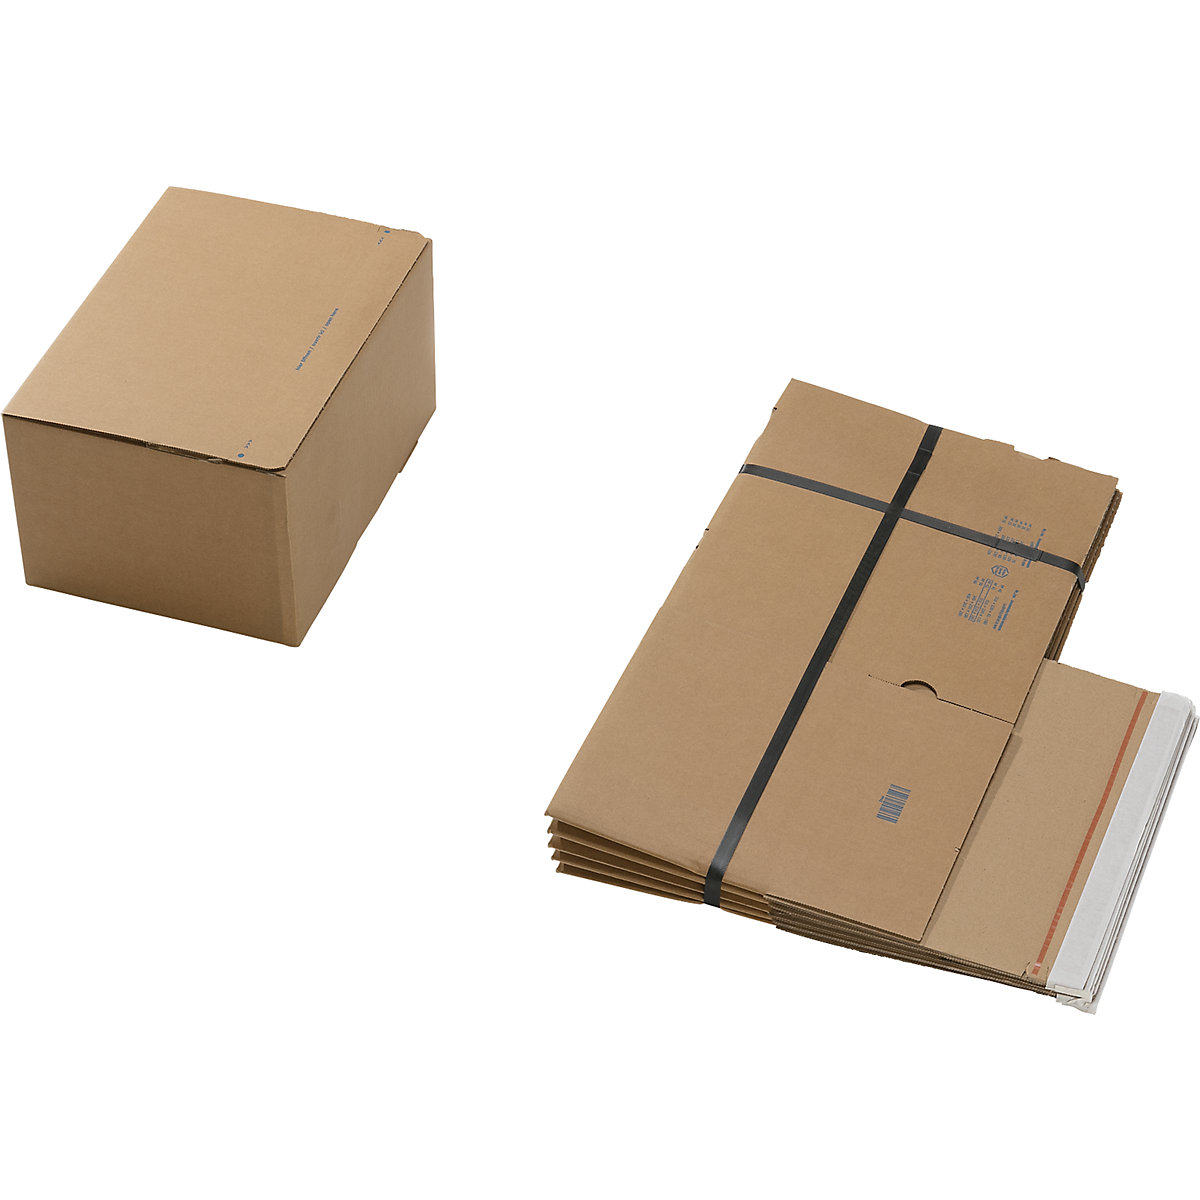 Cajas para envíos, con fondo preparado para montaje rápido y cierre autoadhesivo, dimensiones interiores L x A x H 310 x 230 x 160 mm, UE 100 unid.-4